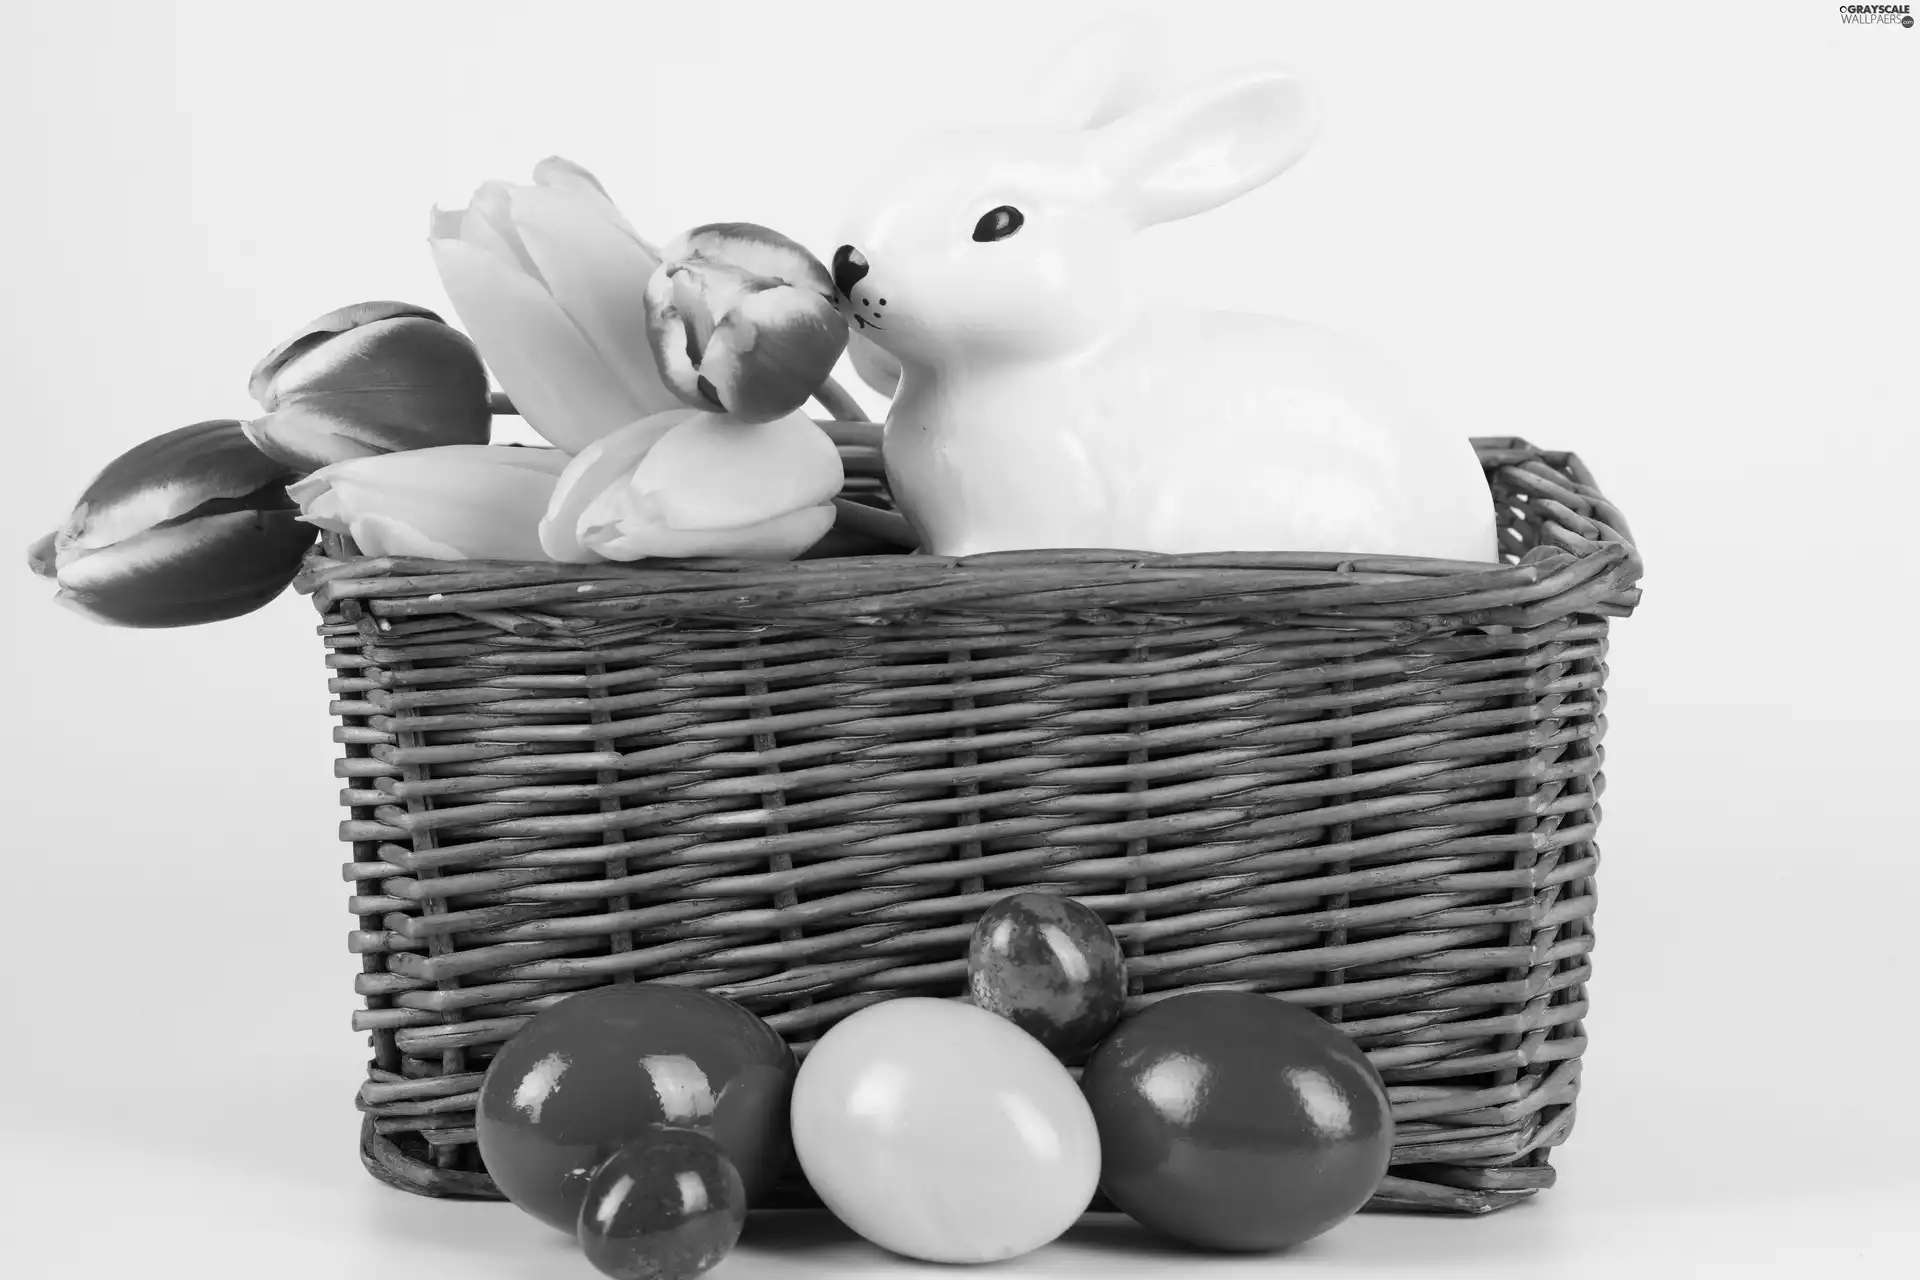 basket, porcelain, easter, eggs, Tulips, rabbit